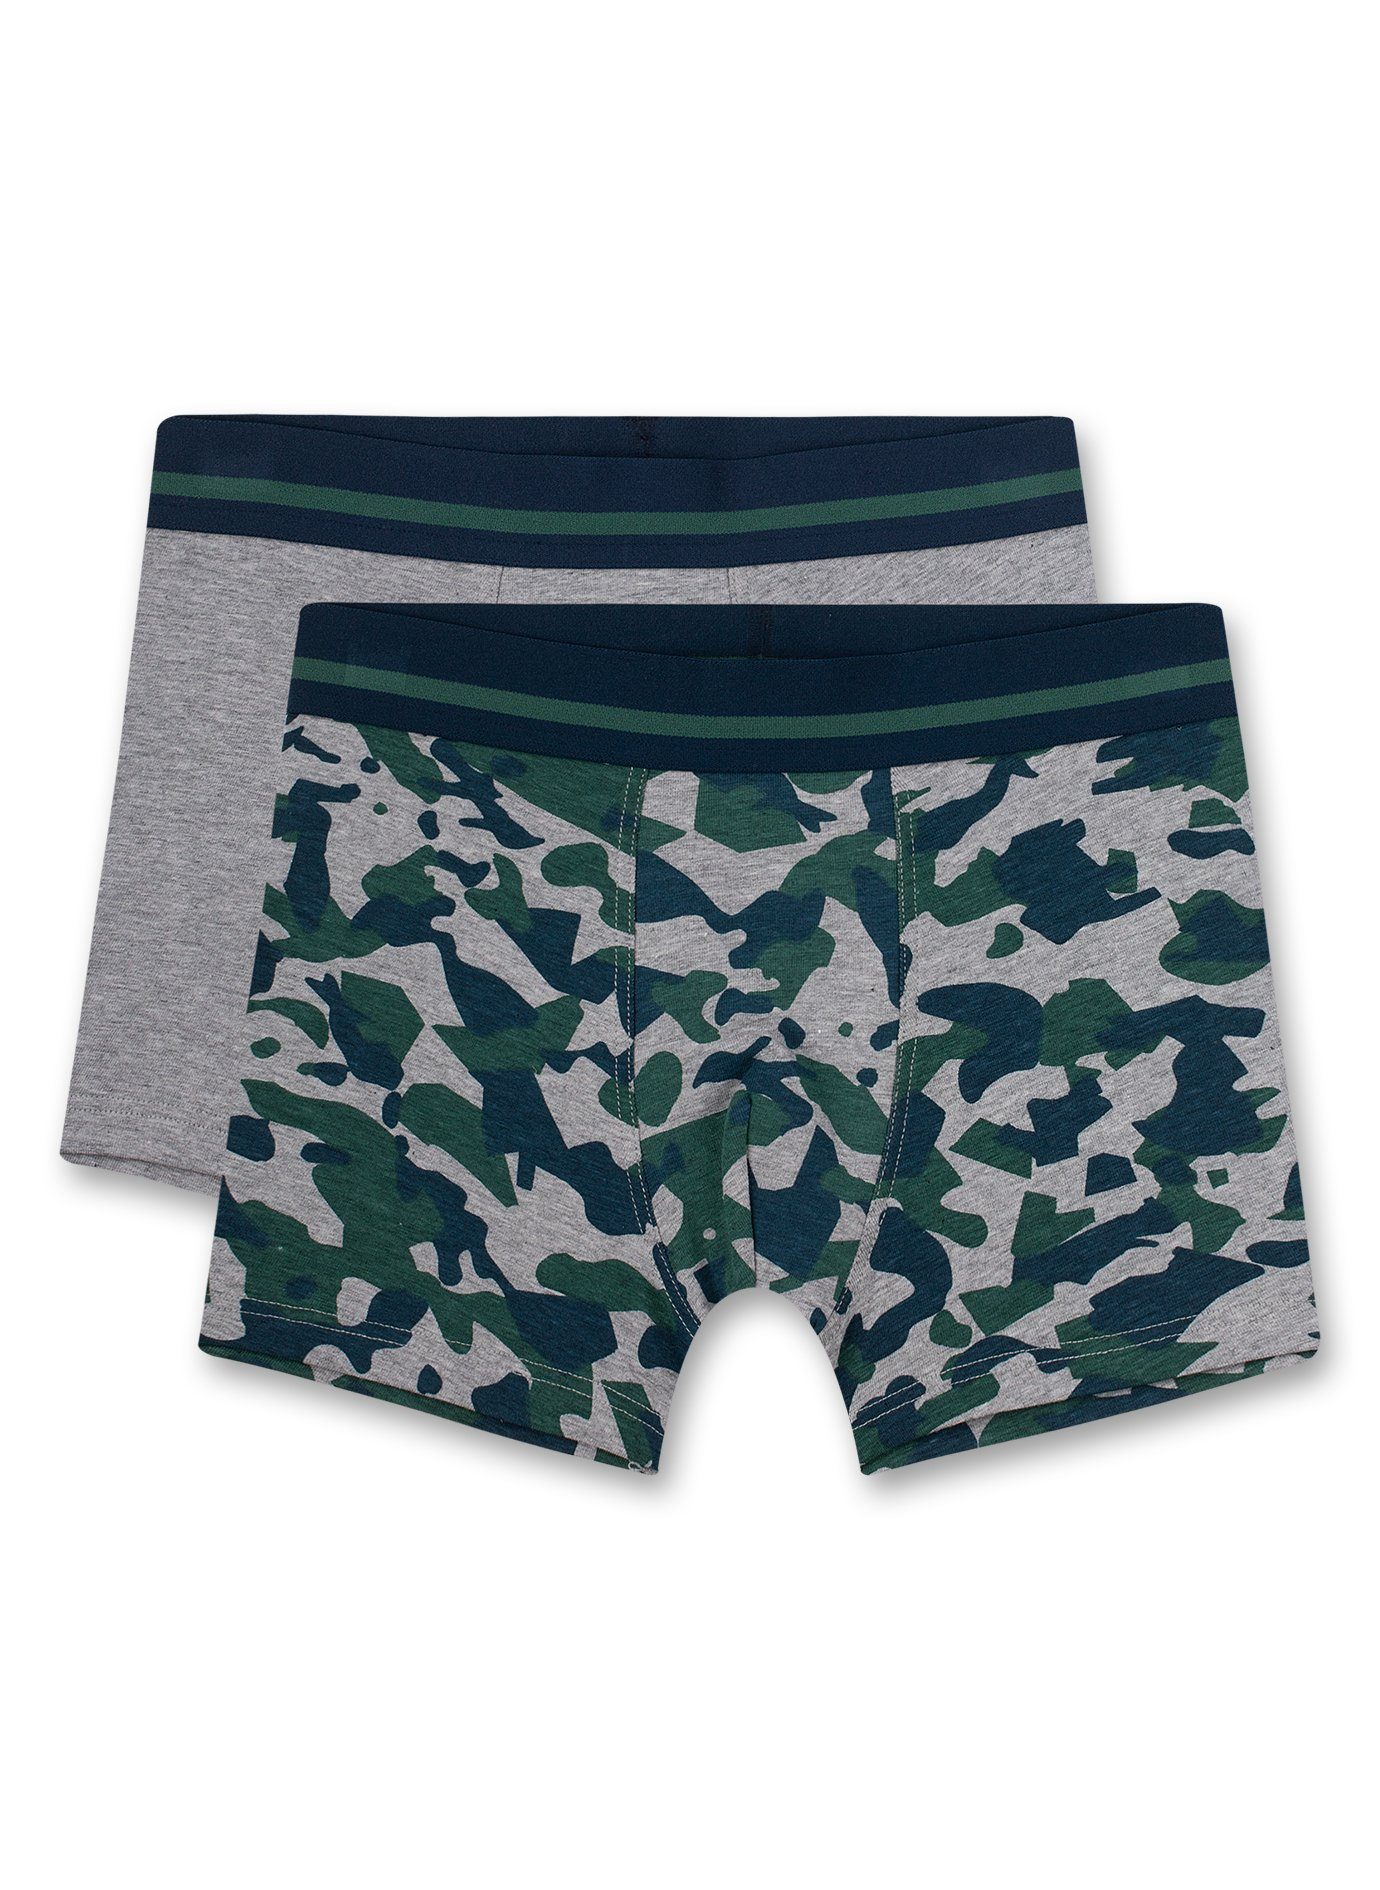 s.Oliver Junior Boxershorts s.Oliver Jungen 2er Pack Boxershorts Shorts Camouflage grün grau (Set, 2-St)